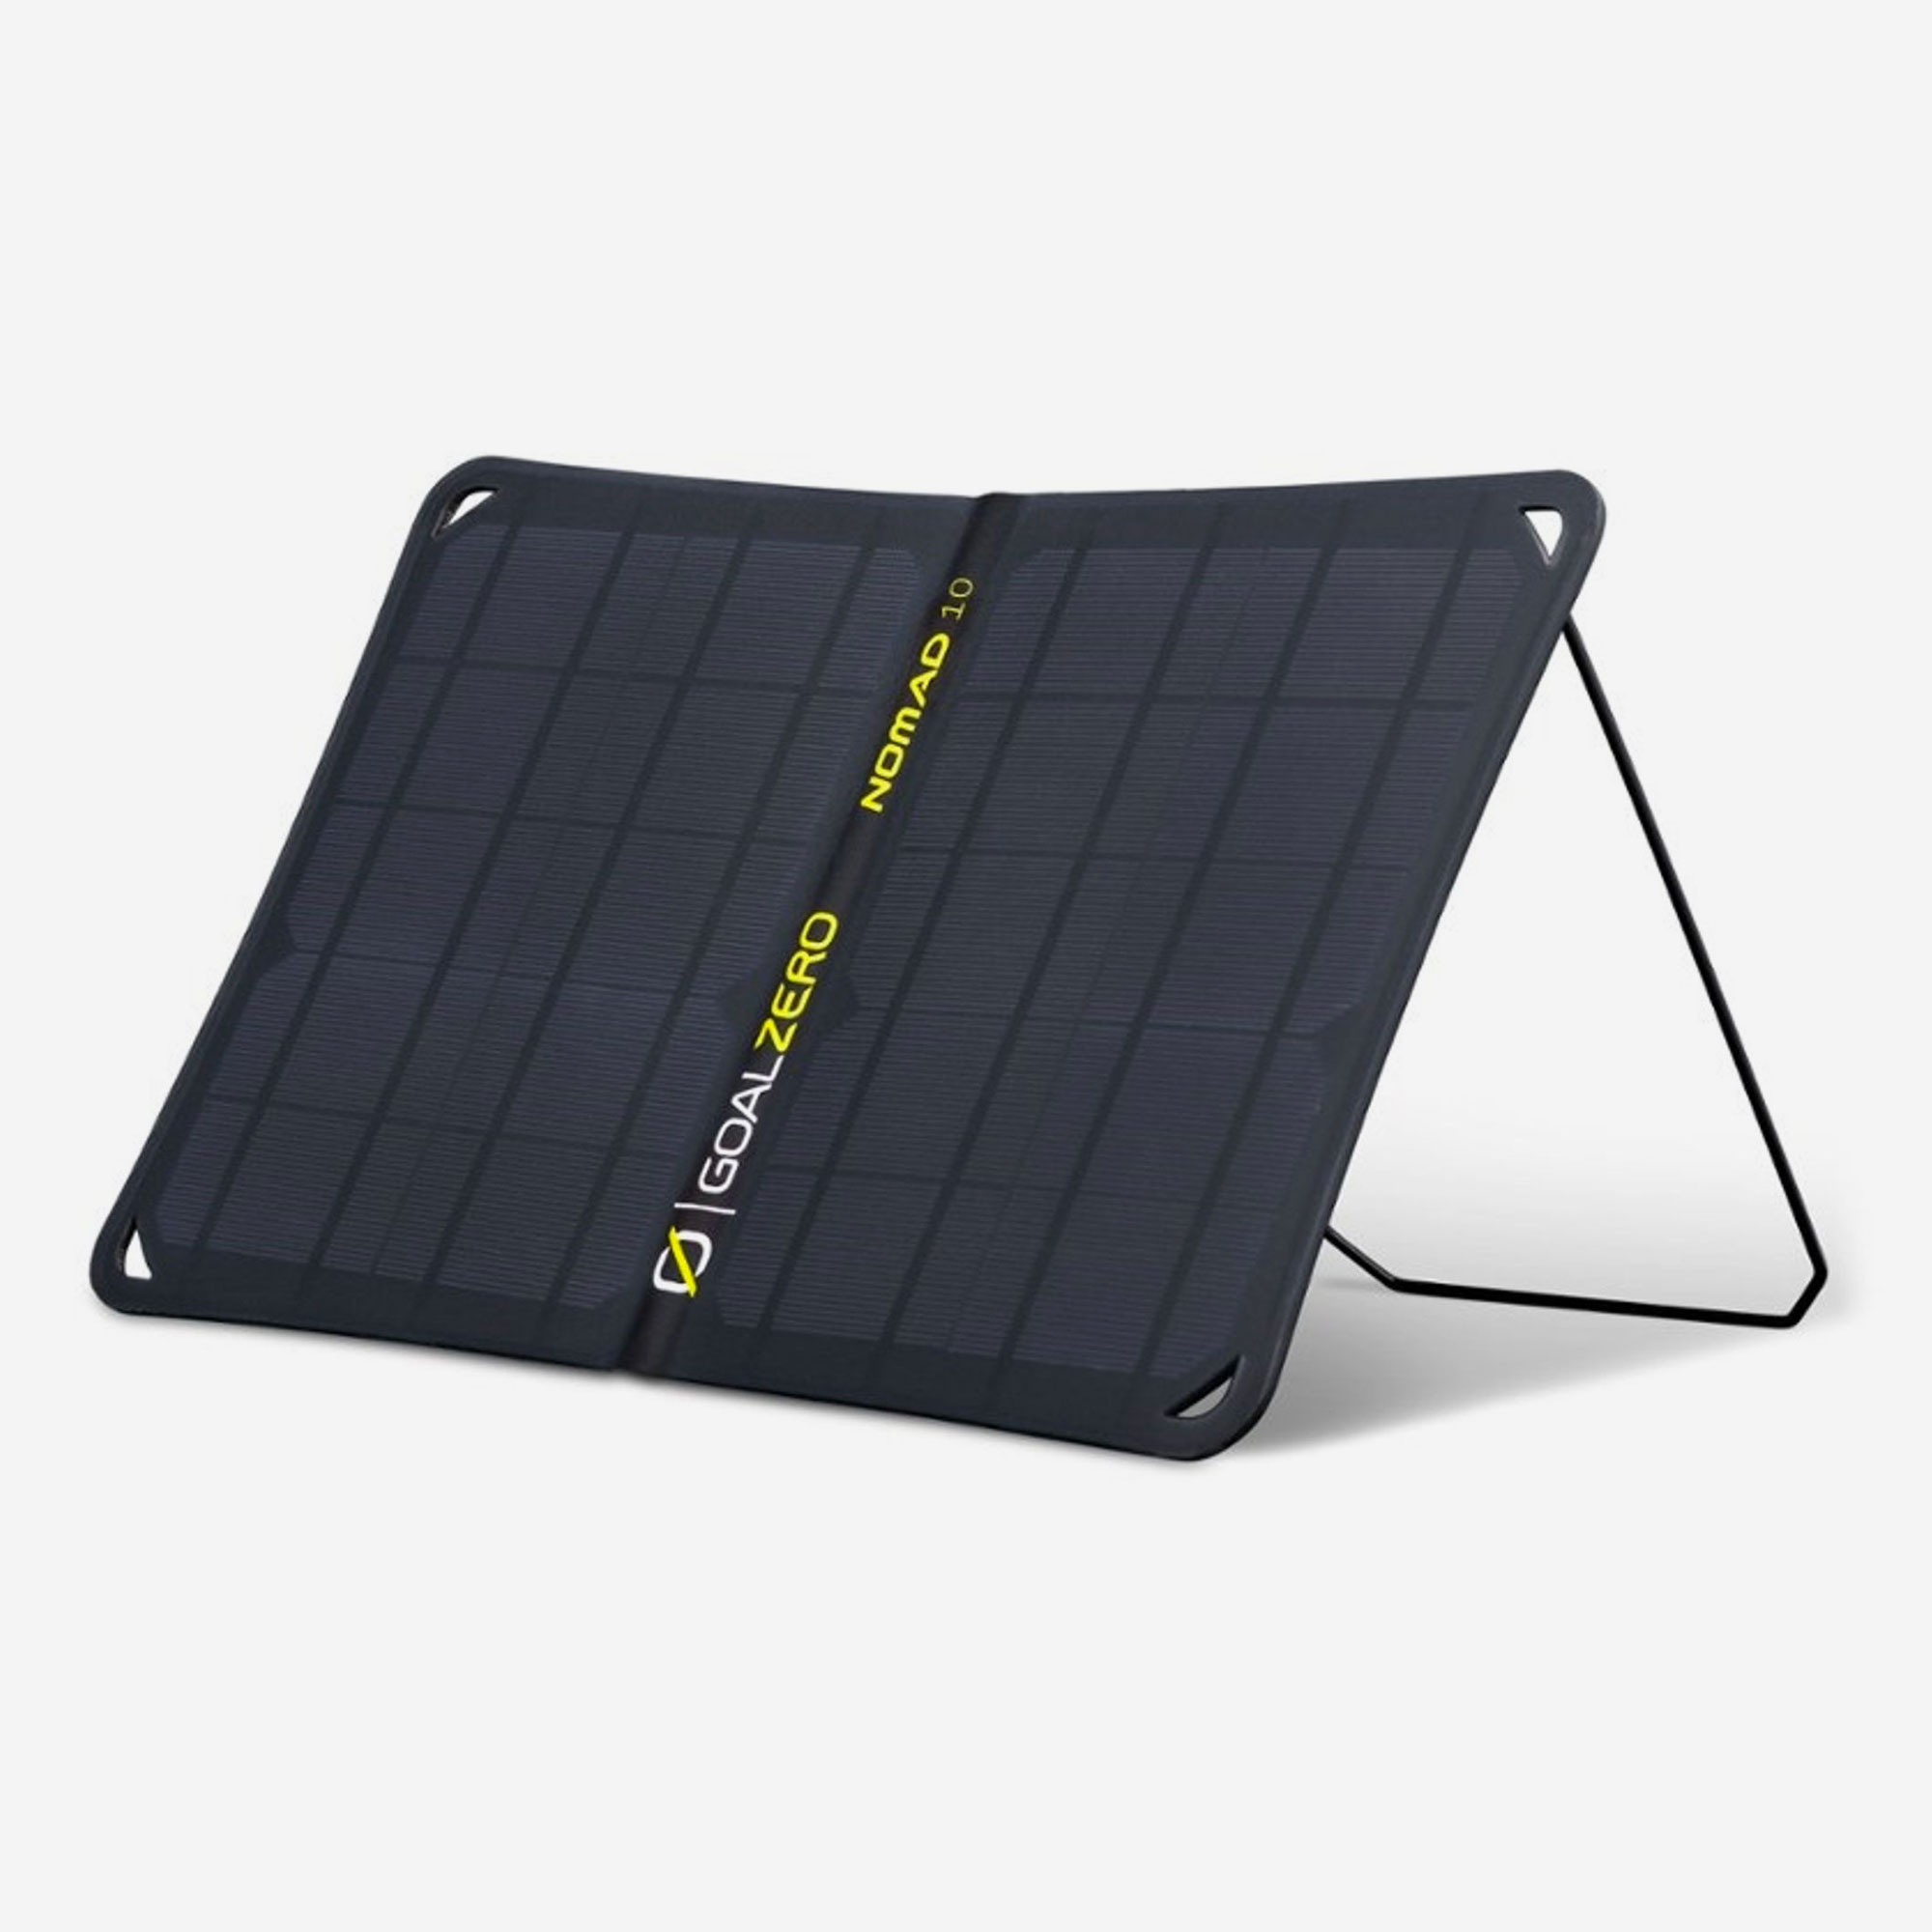 pannello solare compatto goal zero nomad 10 da 10w